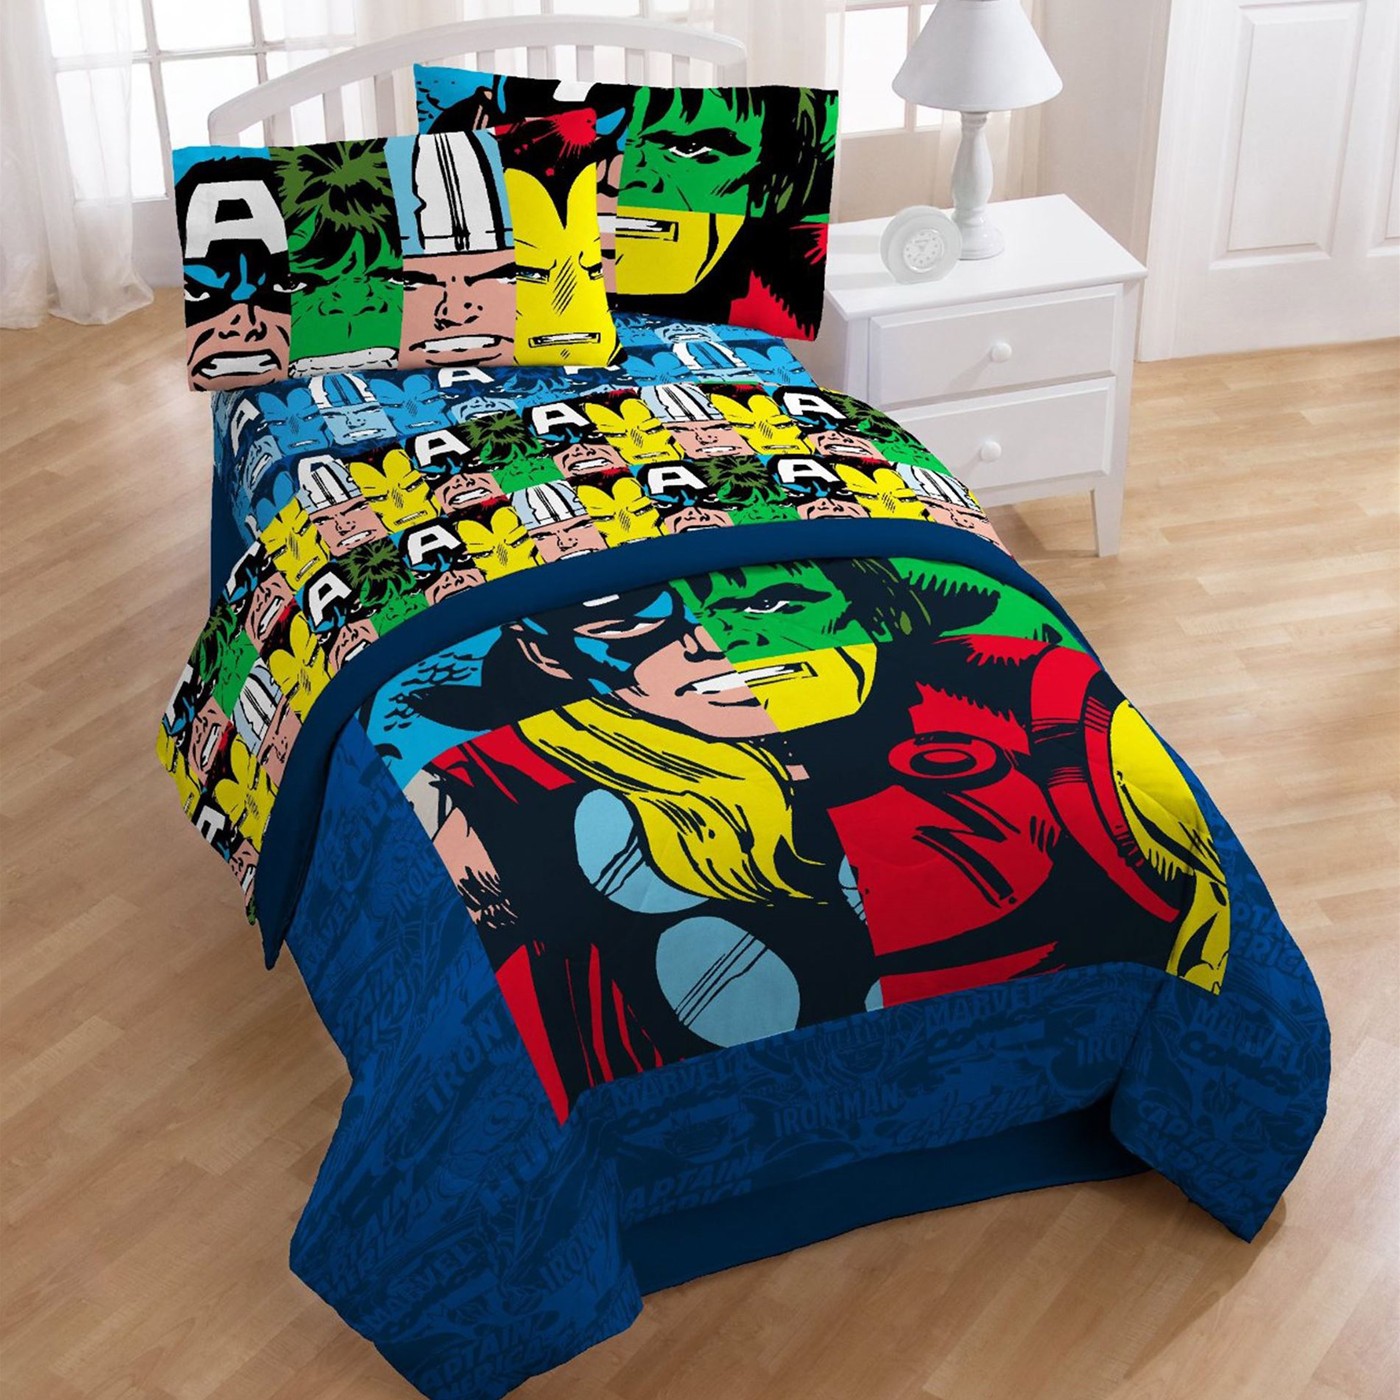 Marvel Heroes Cut Up Twin Comforter